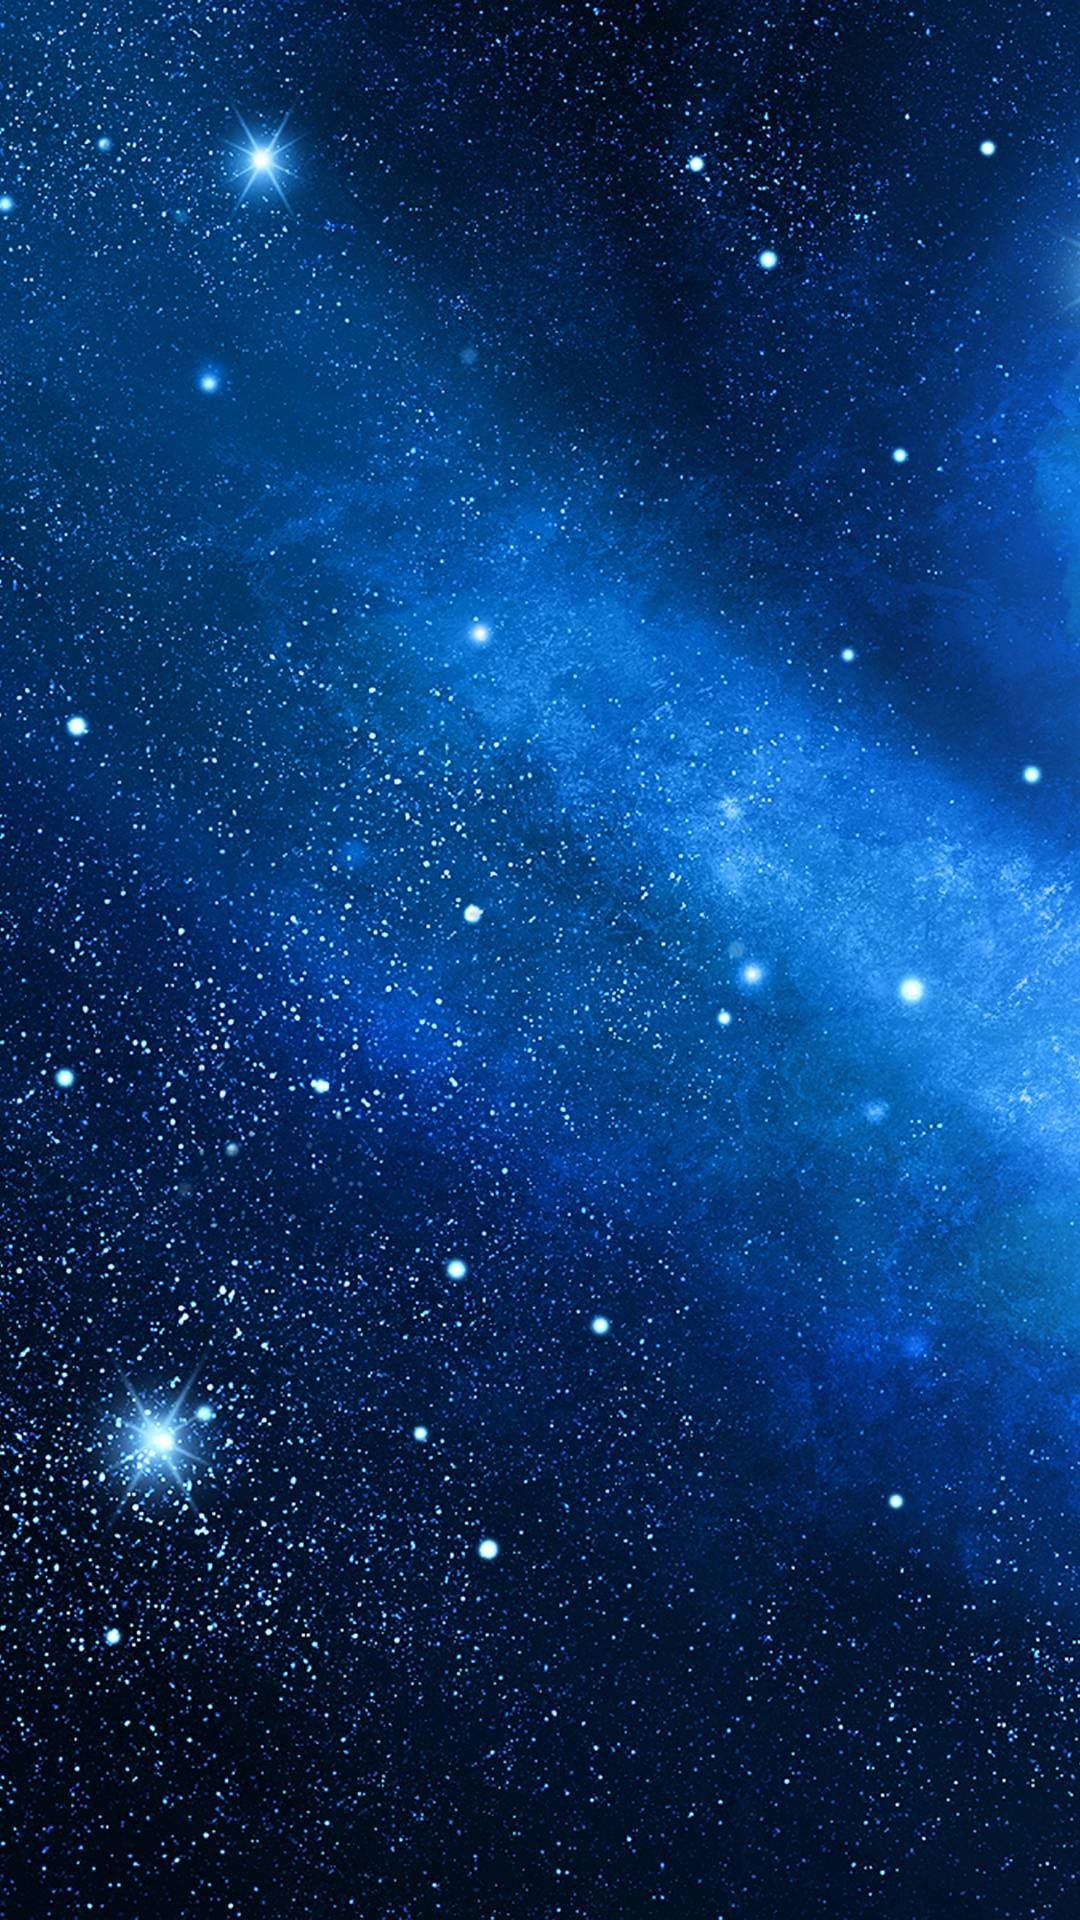 Từ NawPic, những hình nền thiên hà sẽ giúp bạn trốn thoát khỏi quanh đi quẩn lại nhàm chán và đưa bạn đến một hành tinh khác xa lạ. Một chuyến phiêu lưu tuyệt vời chờ đón bạn chỉ bằng một lần click chuột để tải xuống hình nền thiên hà độc đáo này.